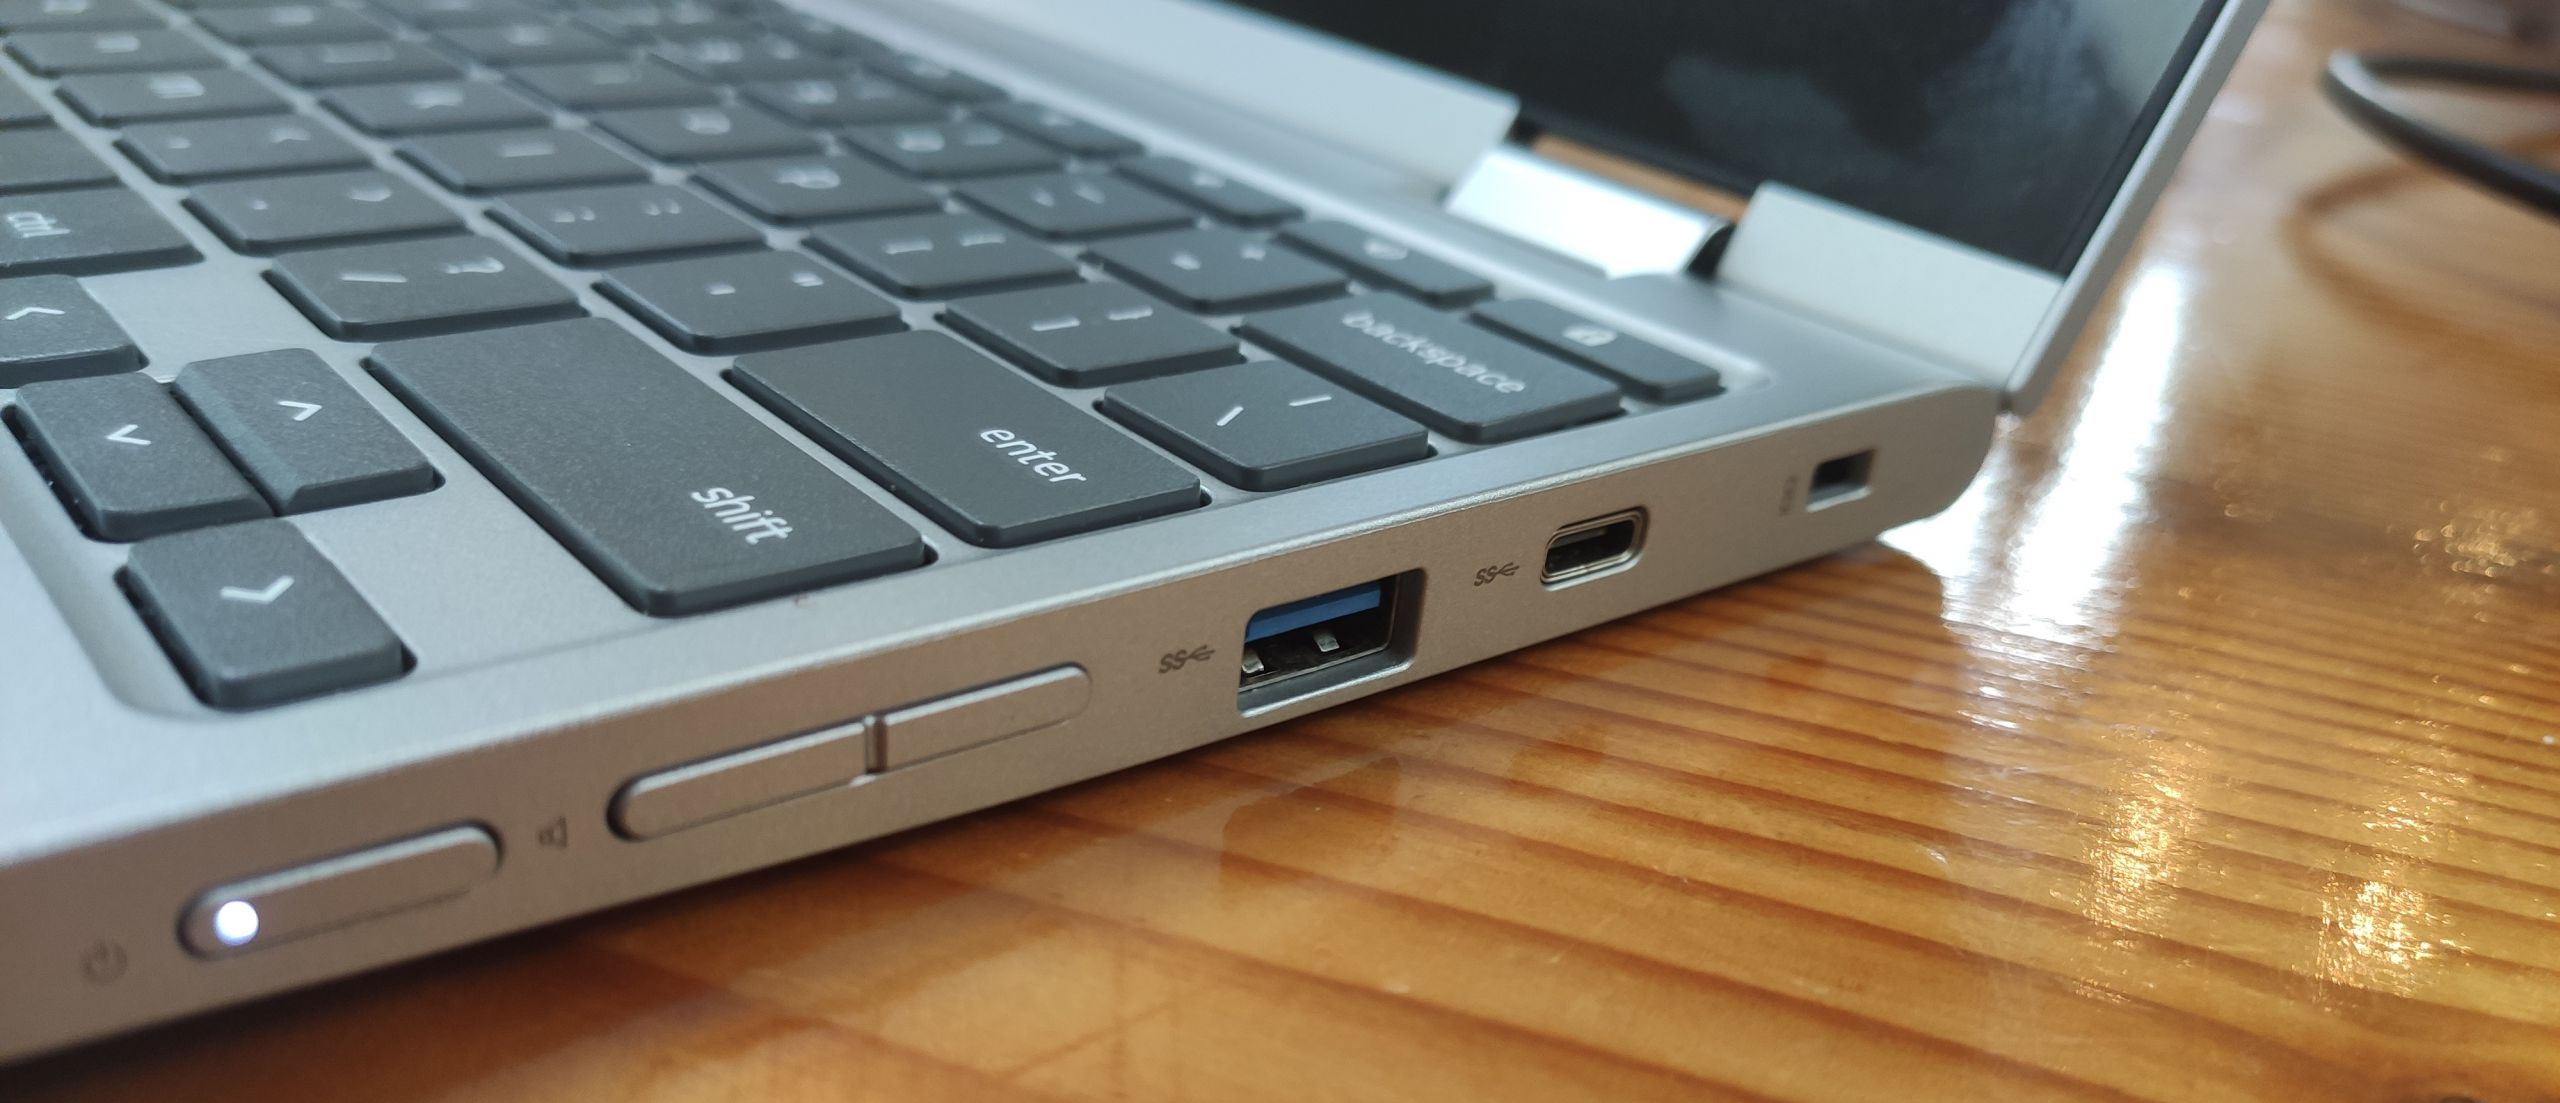 Lenovo C340 Chromebook review - The Gadgeteer